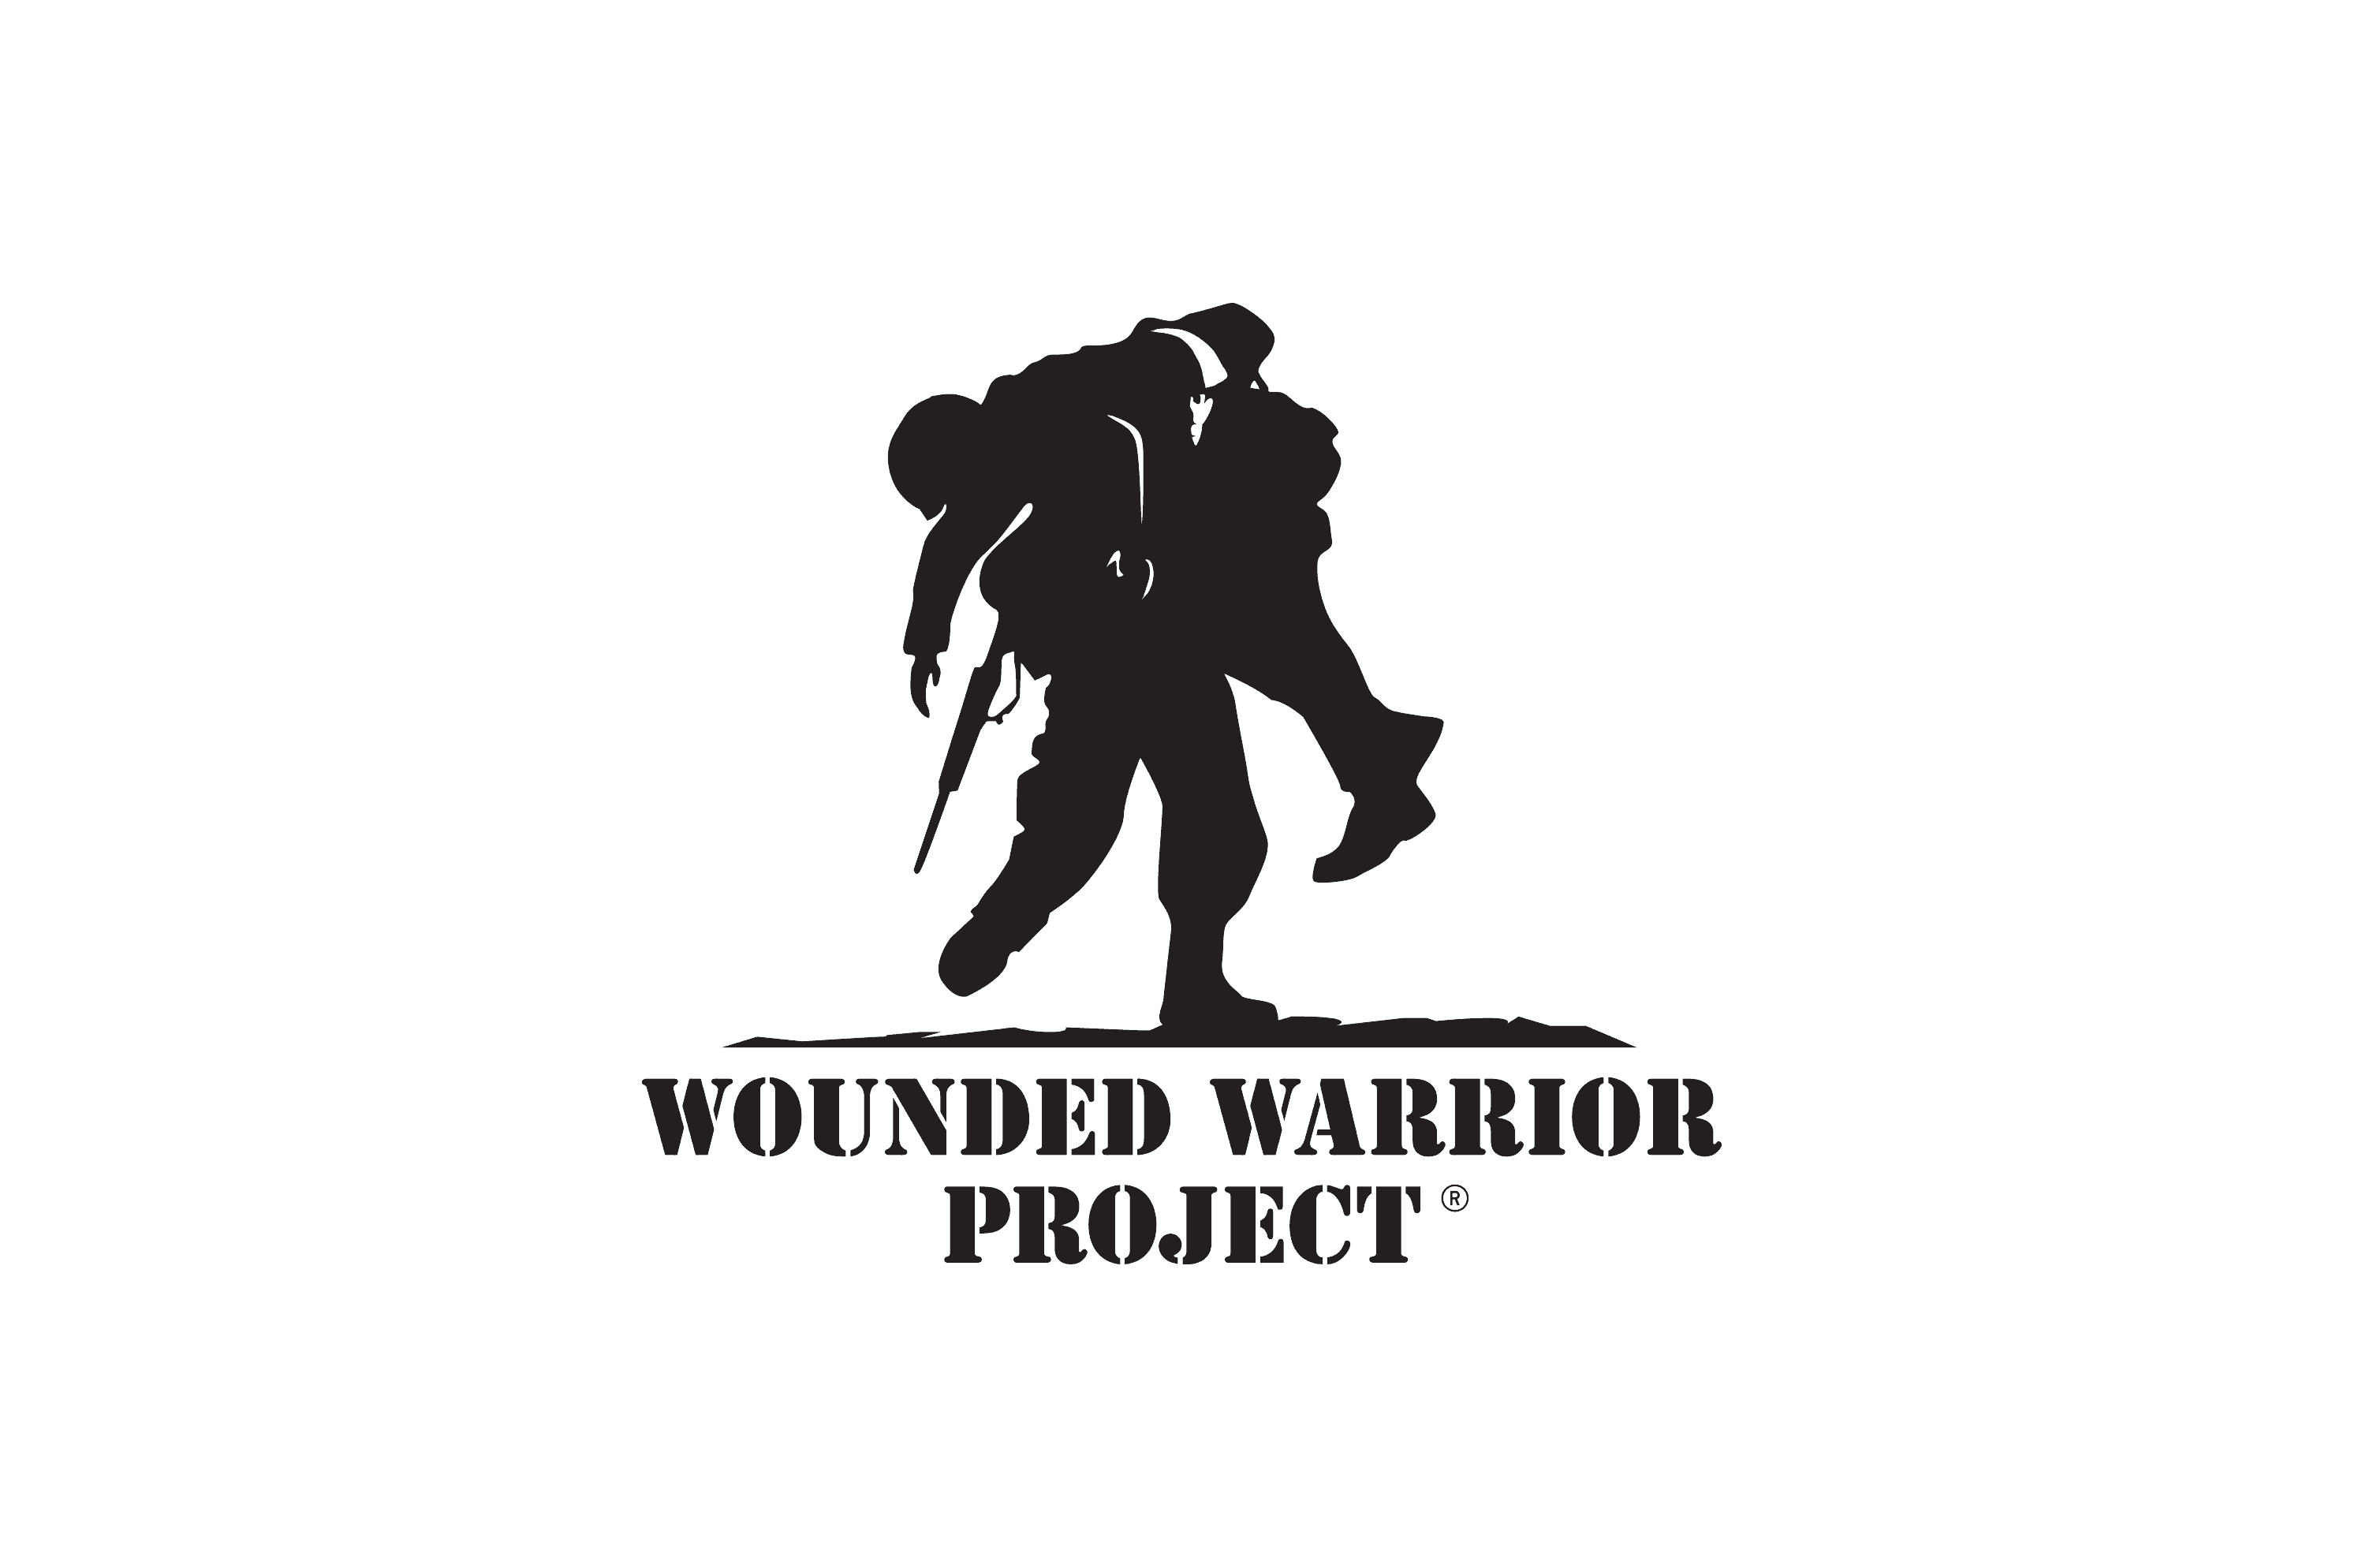 woundedwarriorproject.png?v=60.17.0